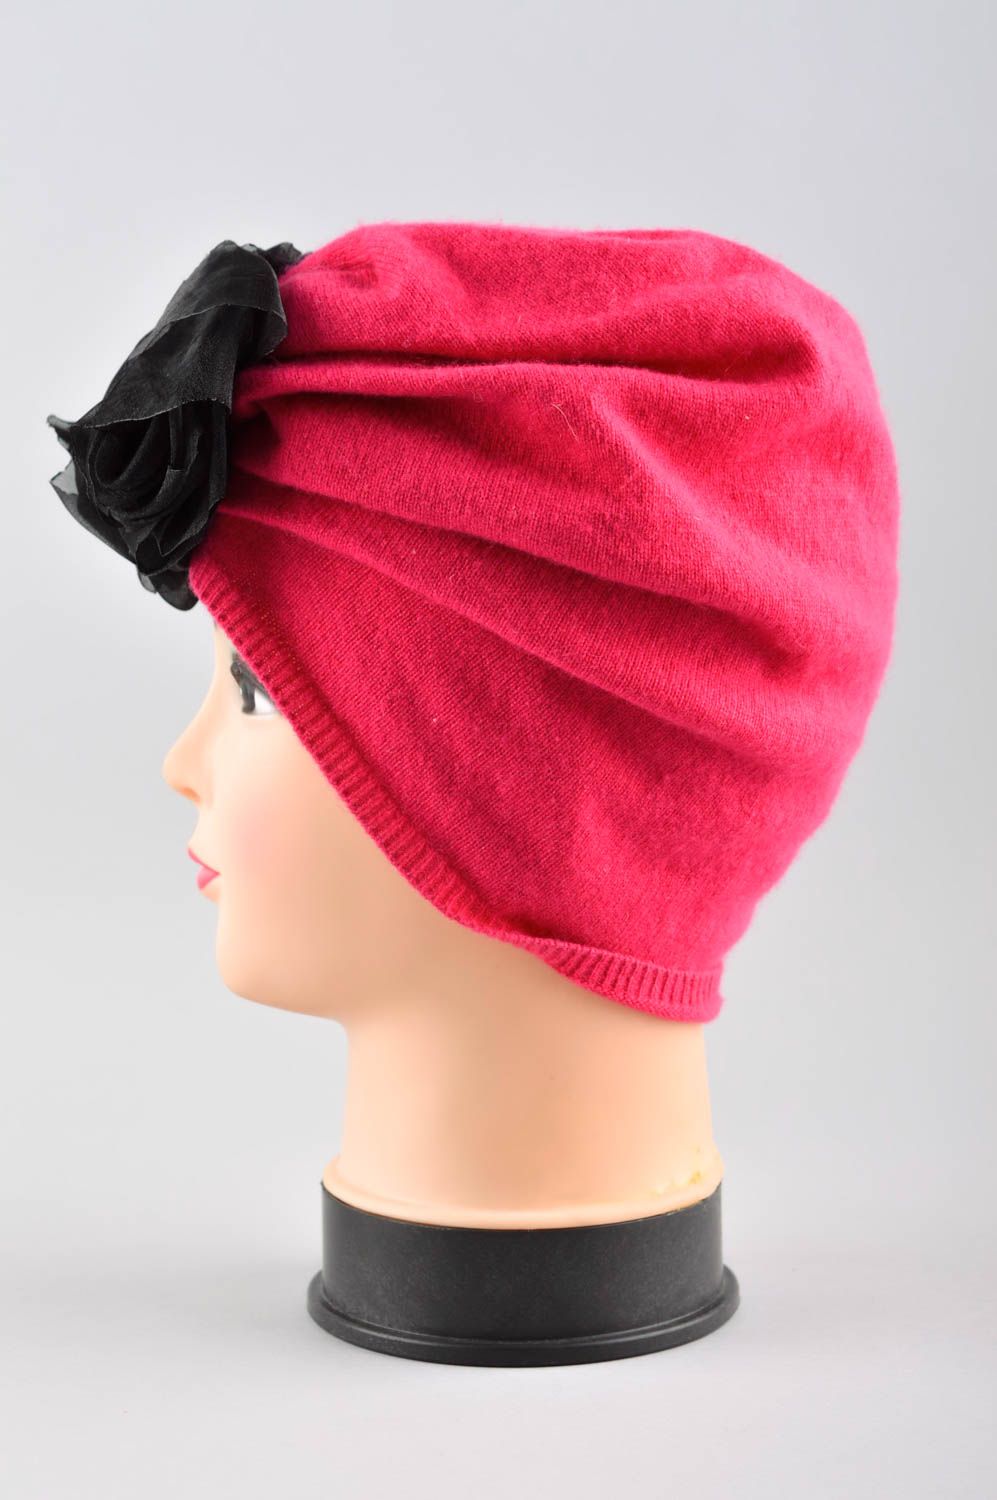 Handmade women hat winter hat winter accessories for girls designer warm hat photo 2